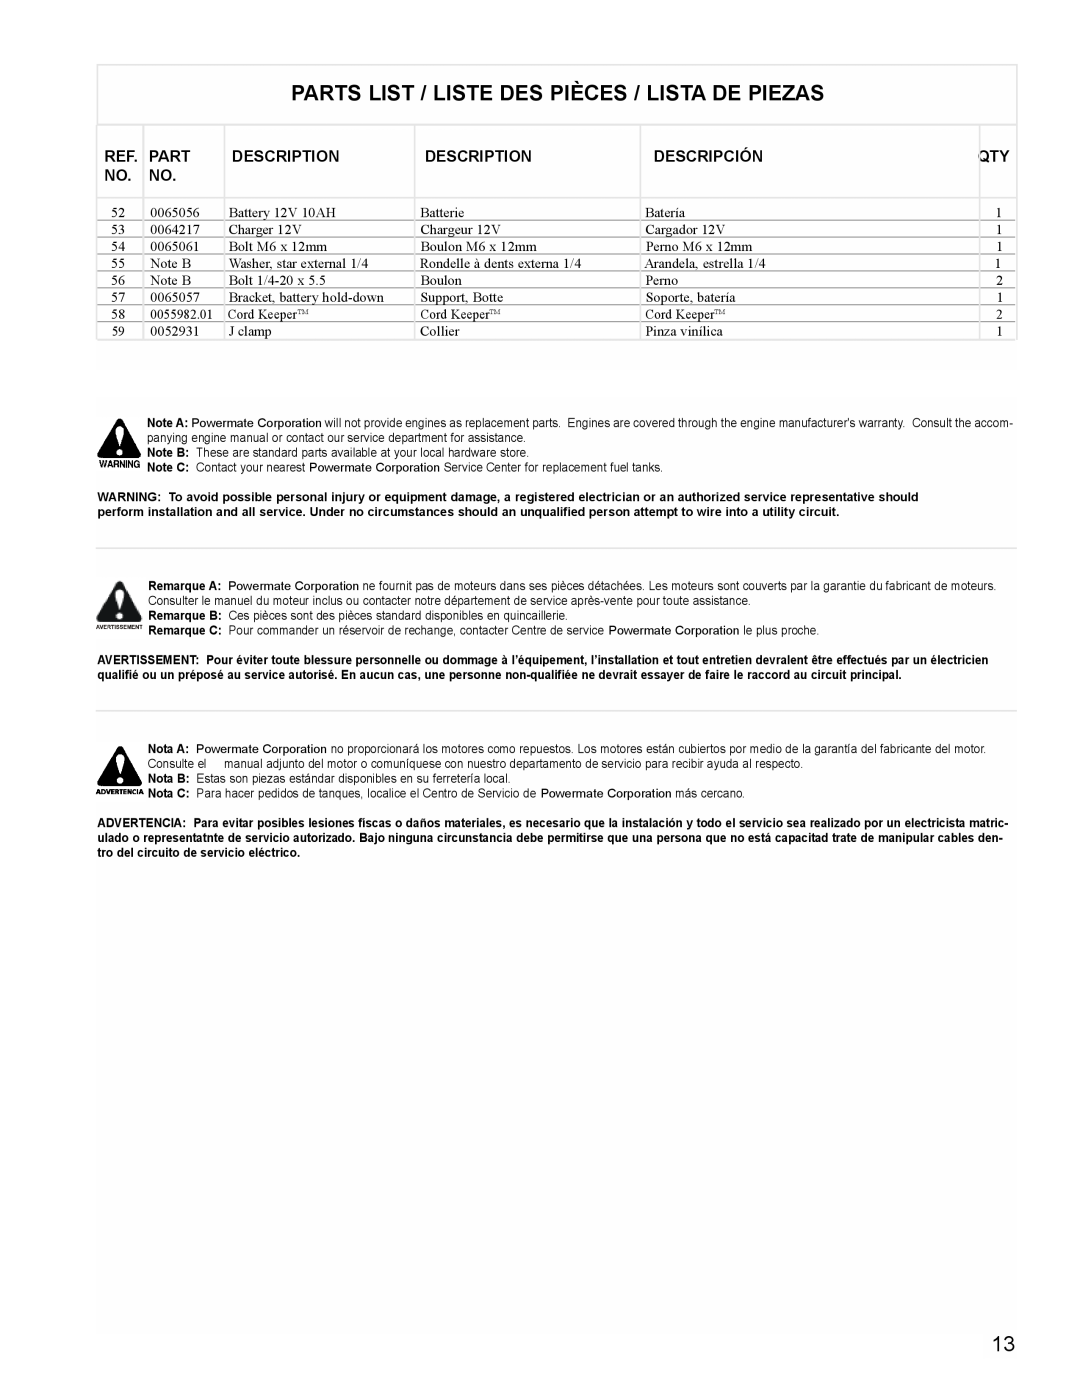 Powermate PM0435004 manual Parts List / Liste Des Pièces / Lista De Piezas, Description, Descripción 